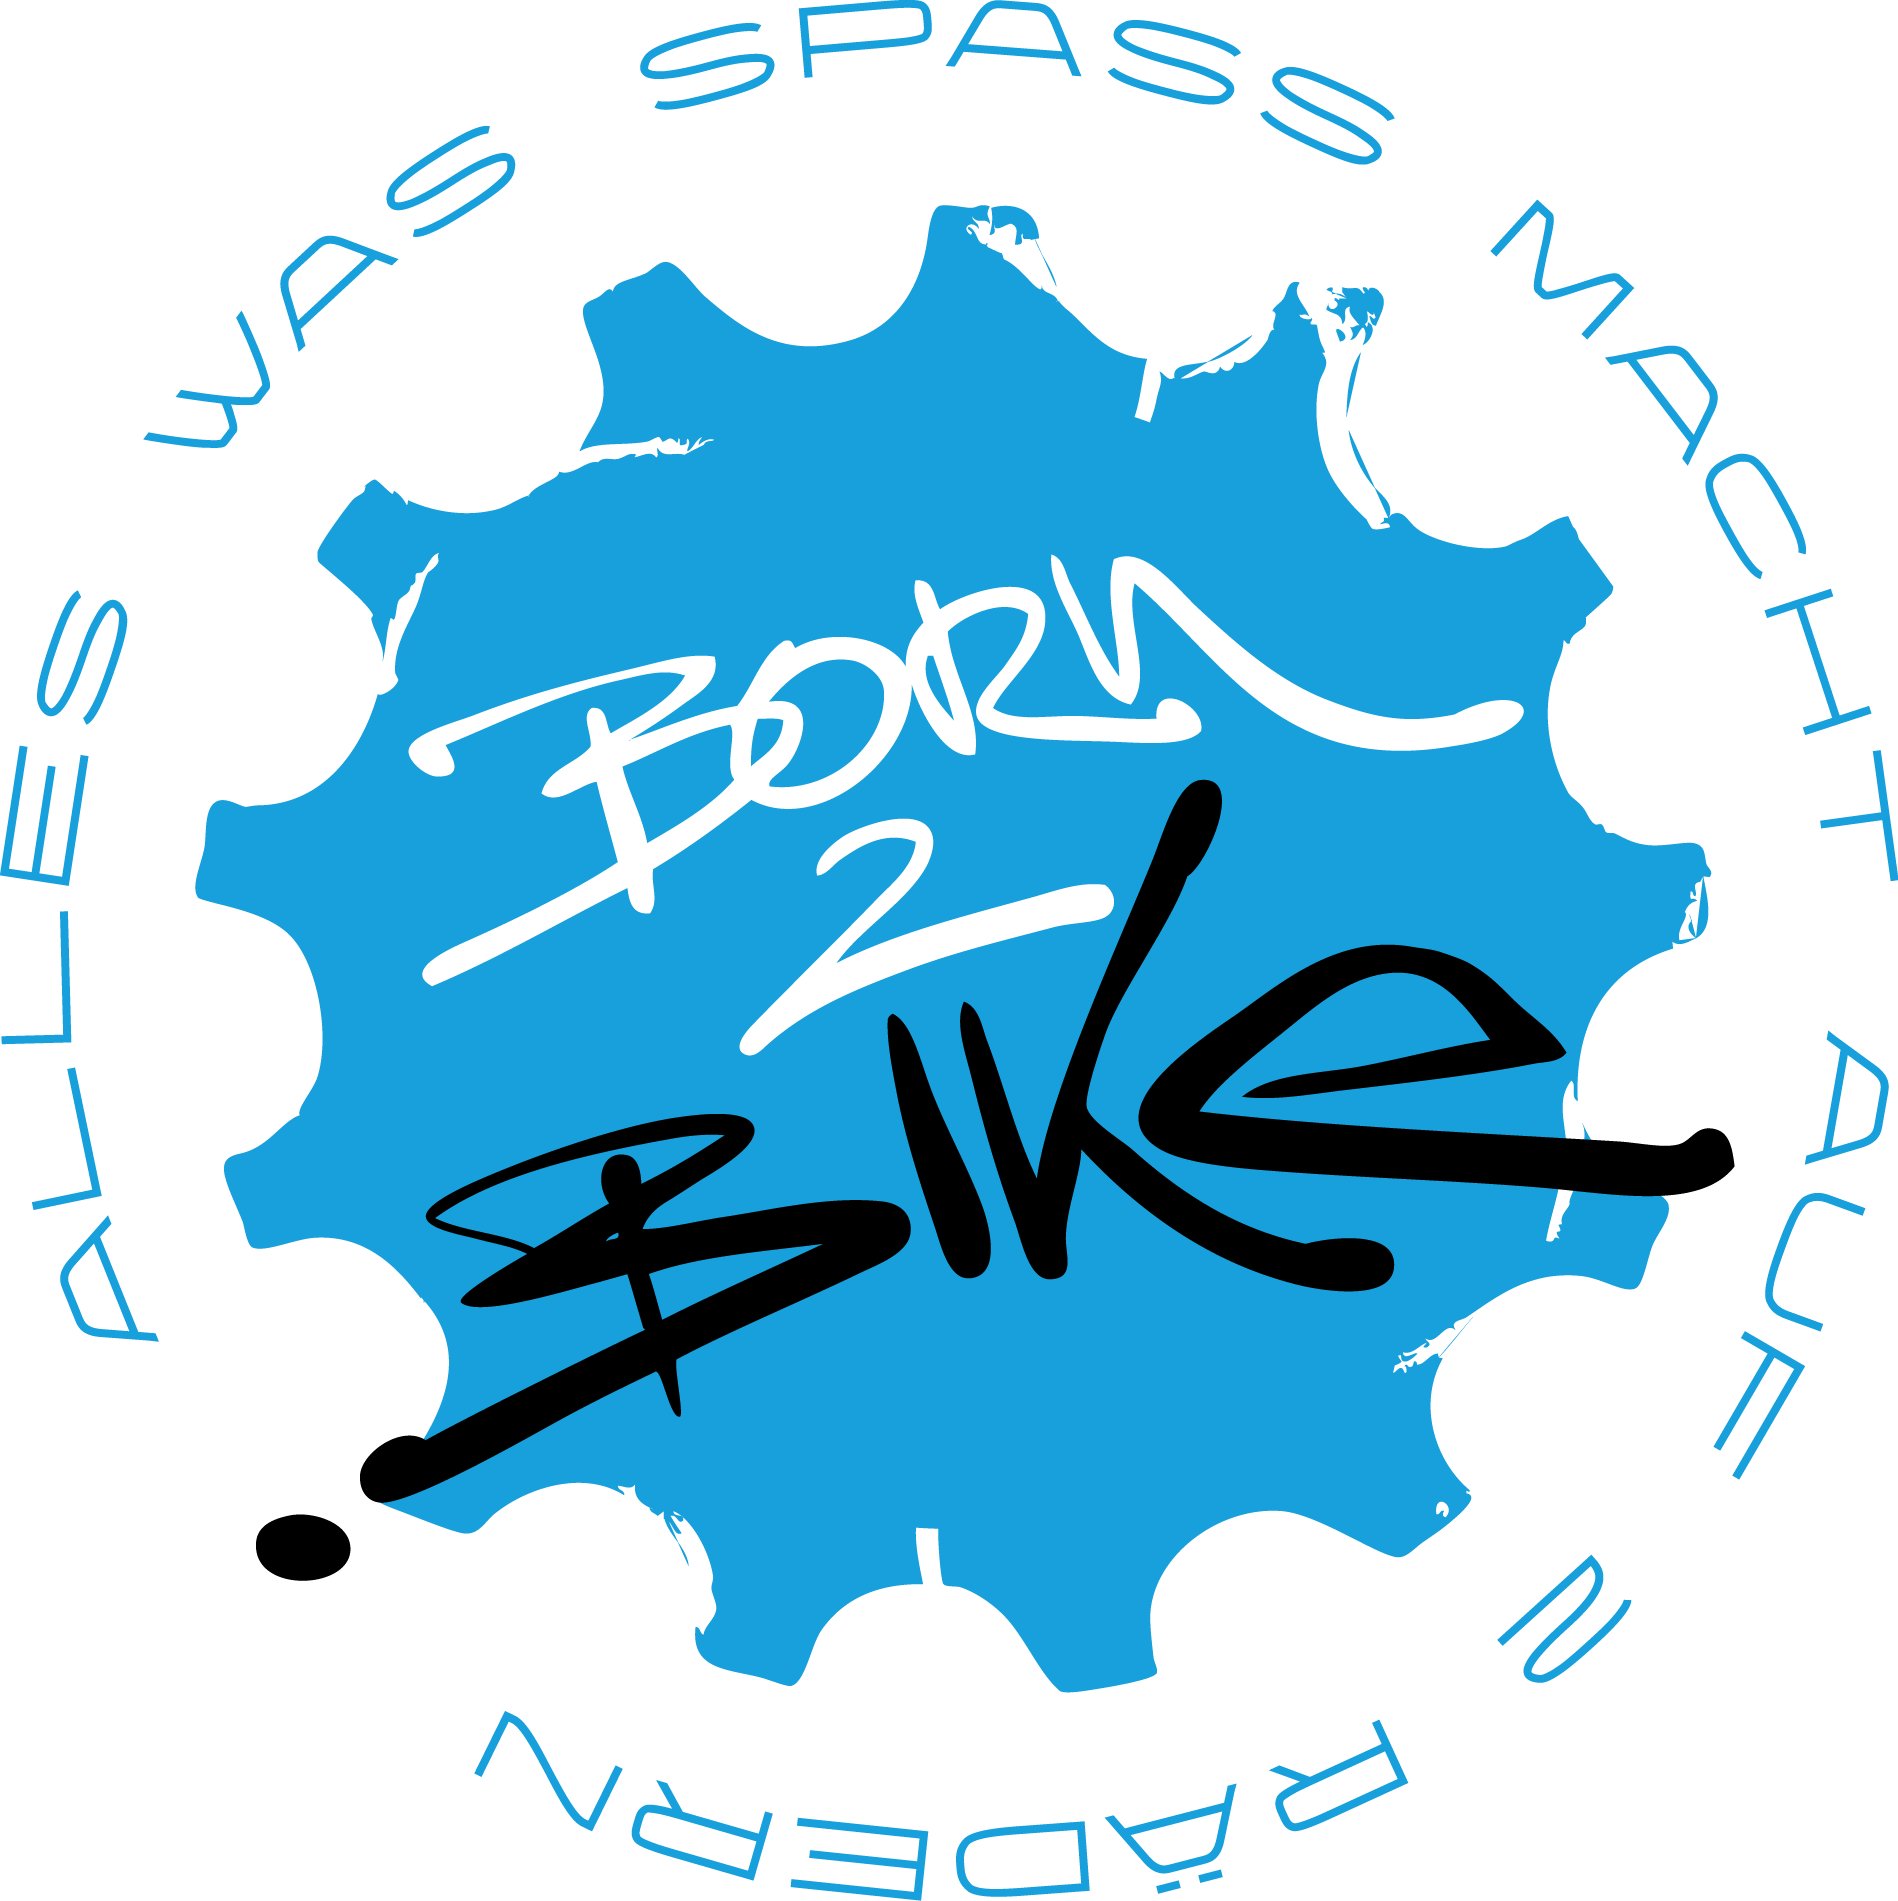 born2.bike - Der Blog von Bike-Enthusiasten für Bike-Enthusiasten